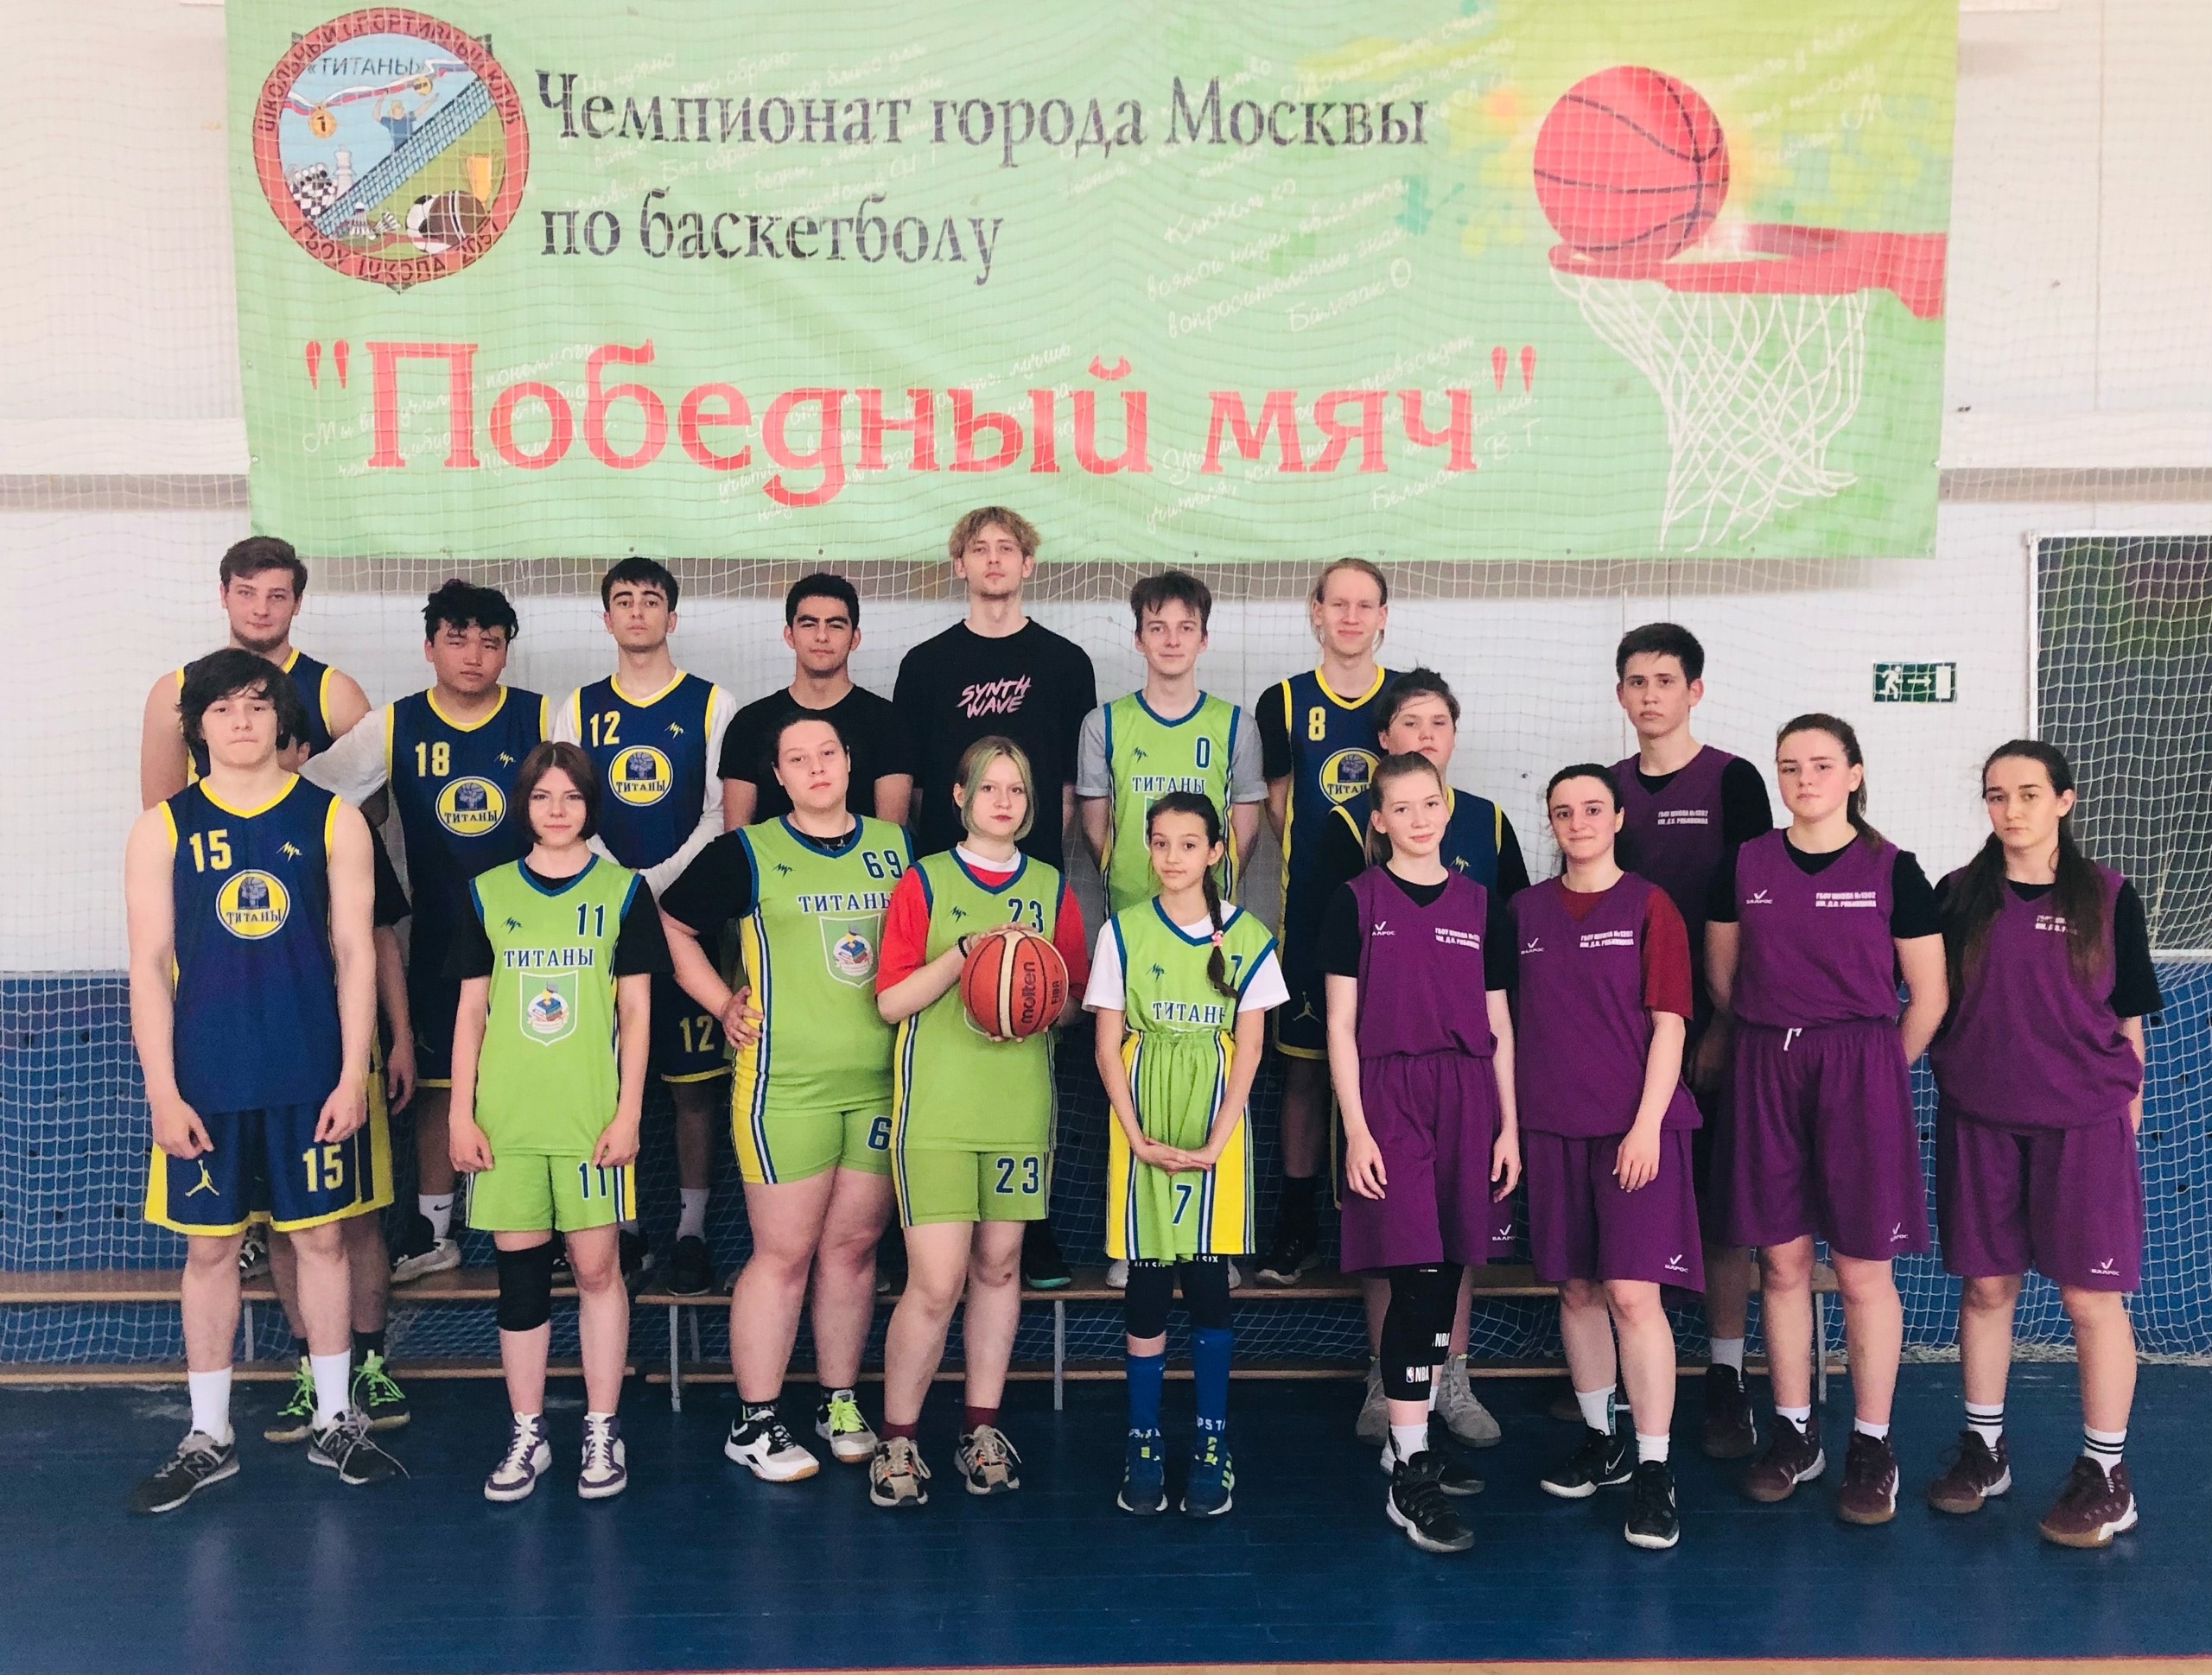 Товарищеские игры по баскетболу прошли в ШСК «Титаны»